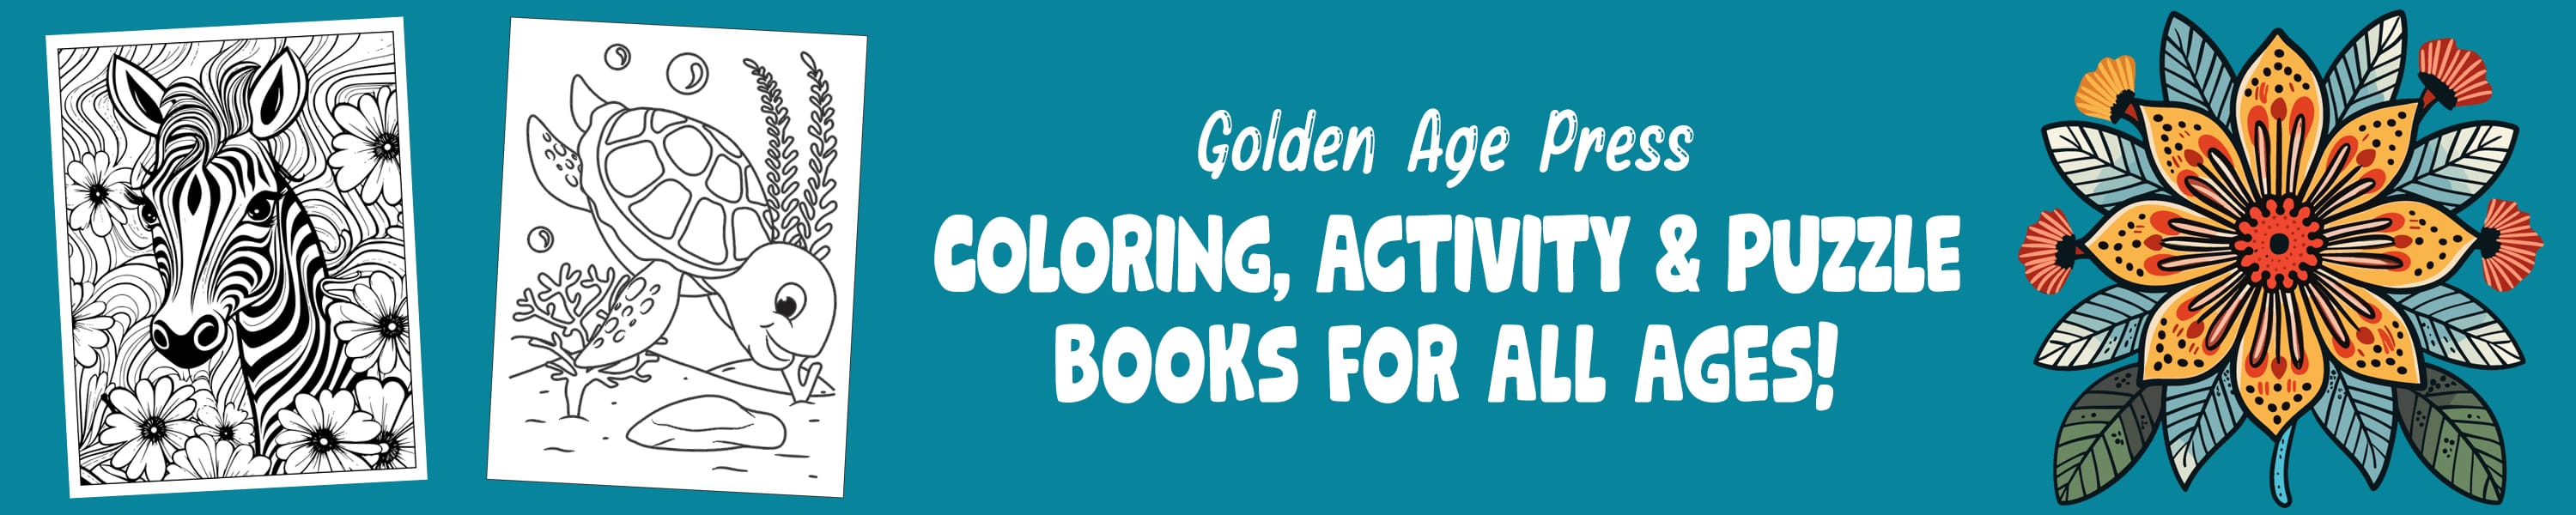 Golden Age Press Children's Books